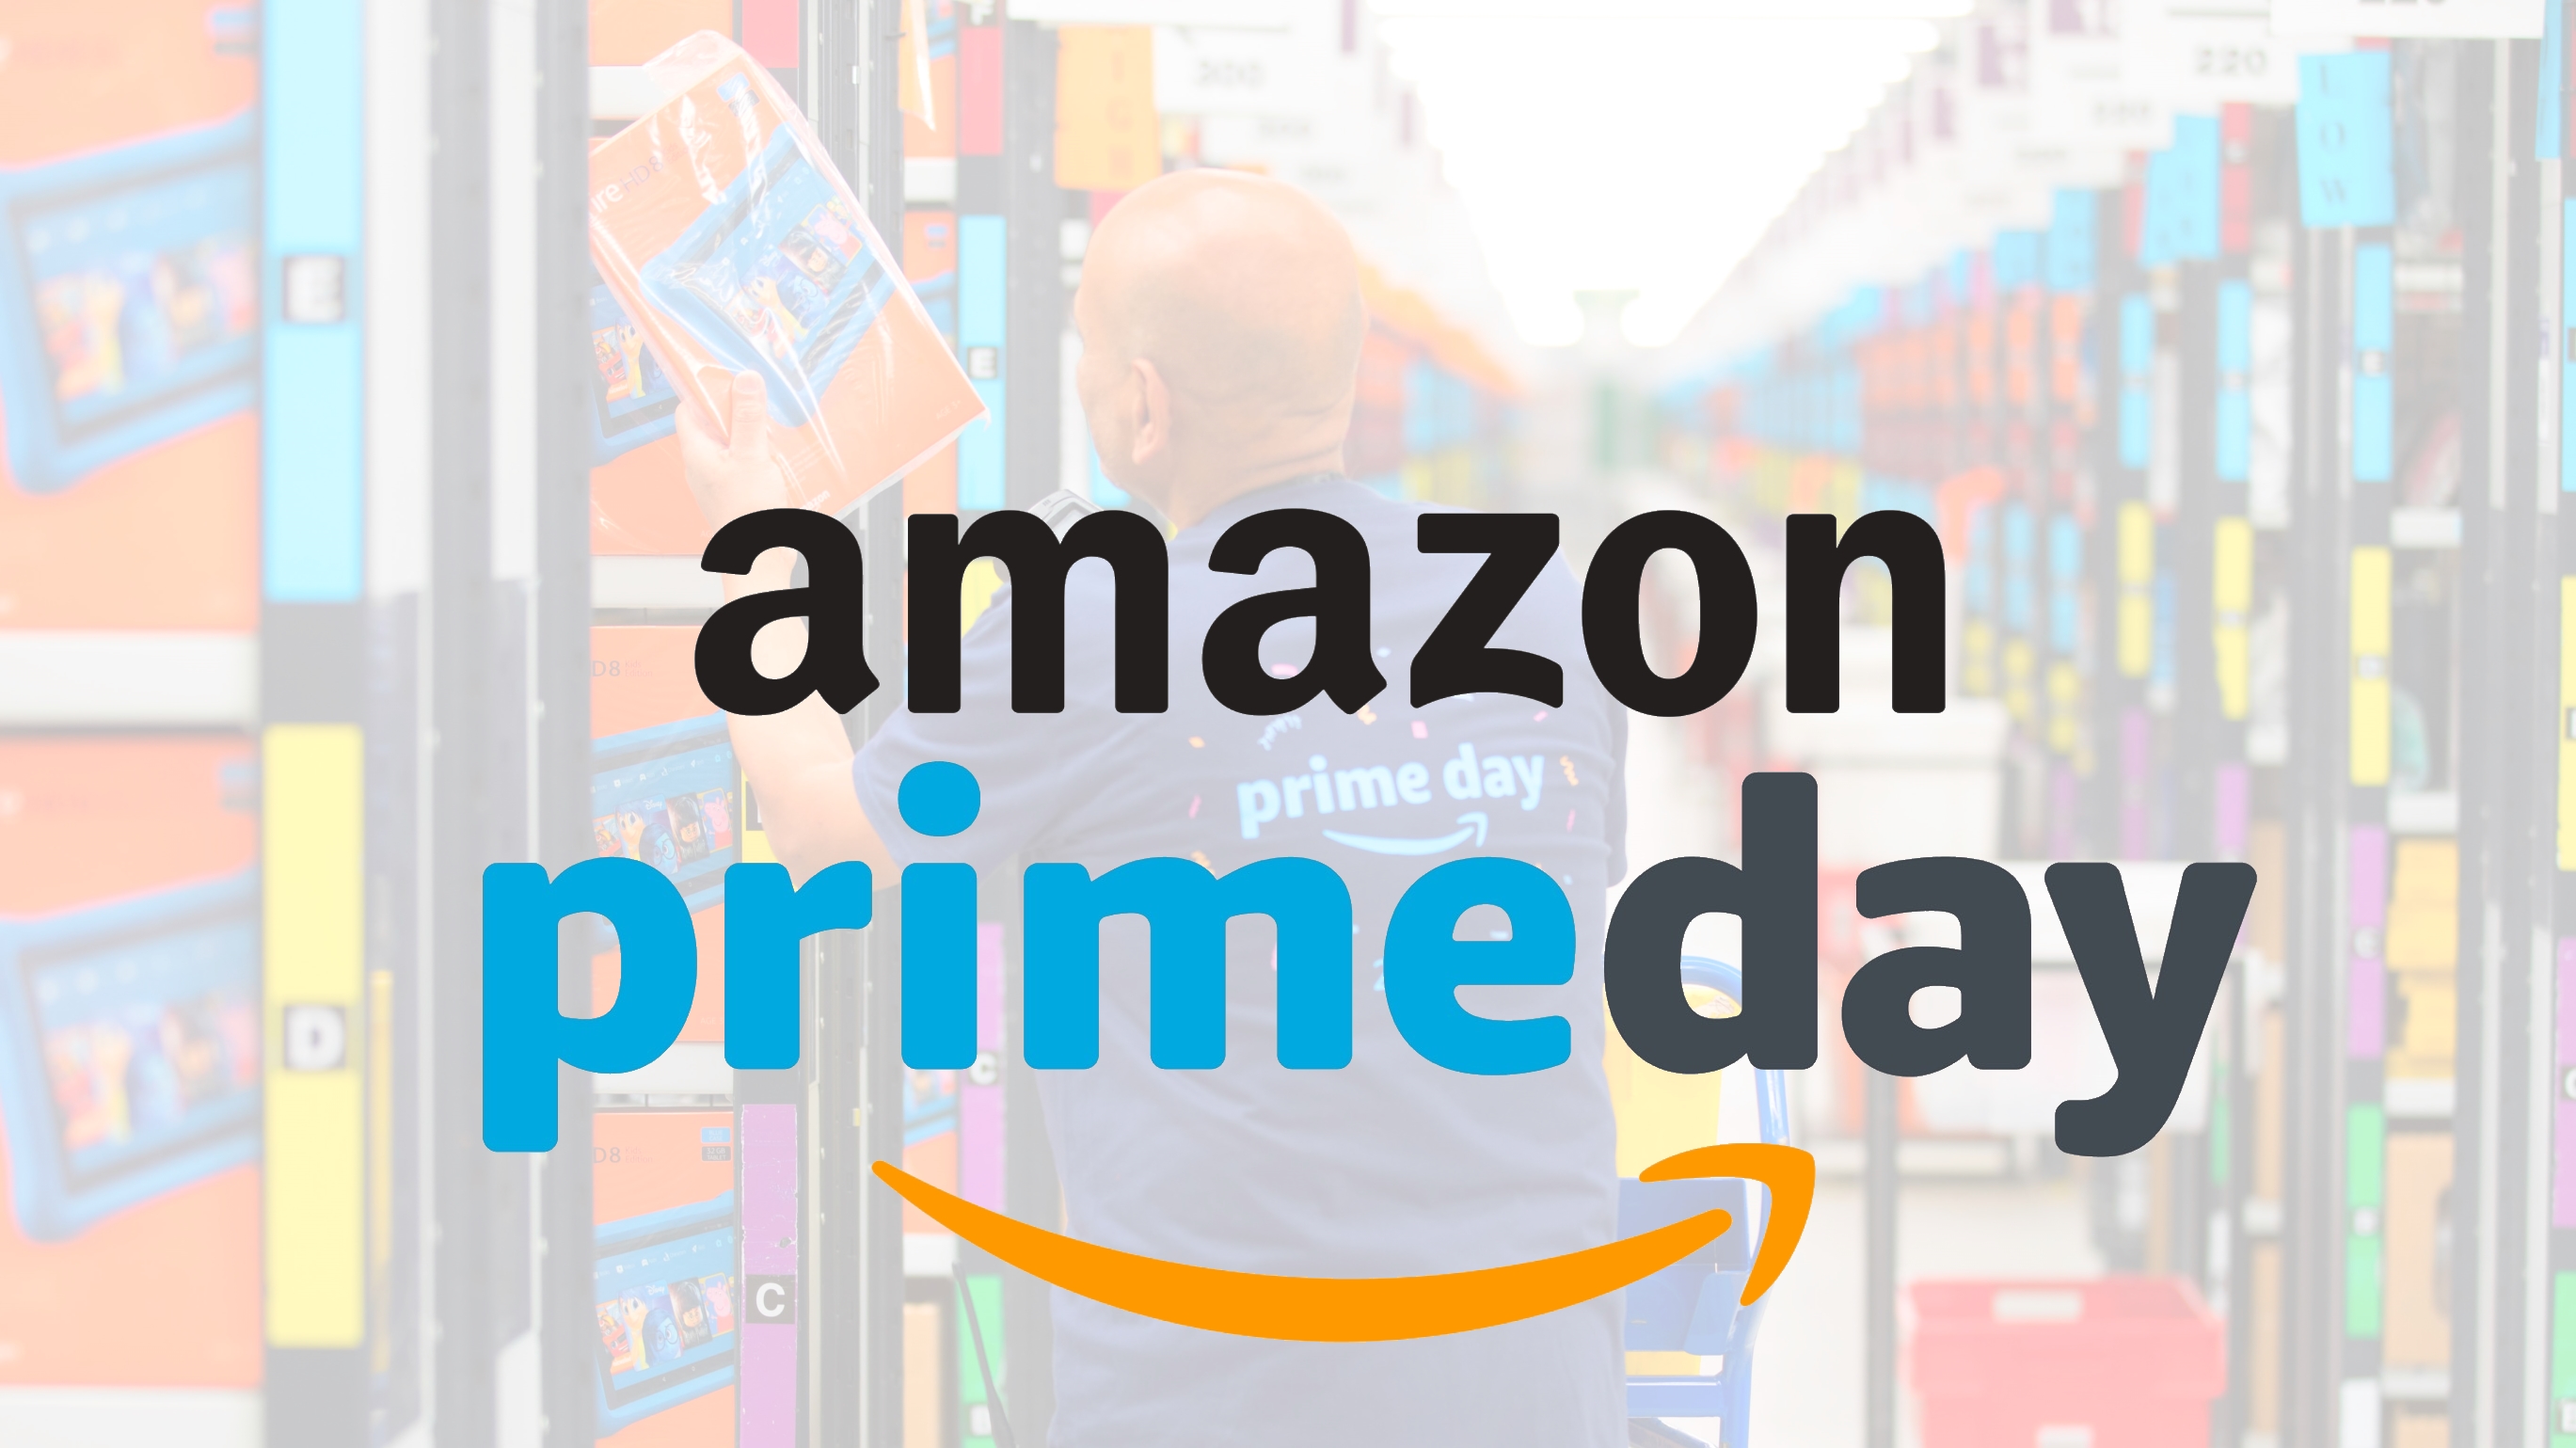 Amazon Prime Day Strike